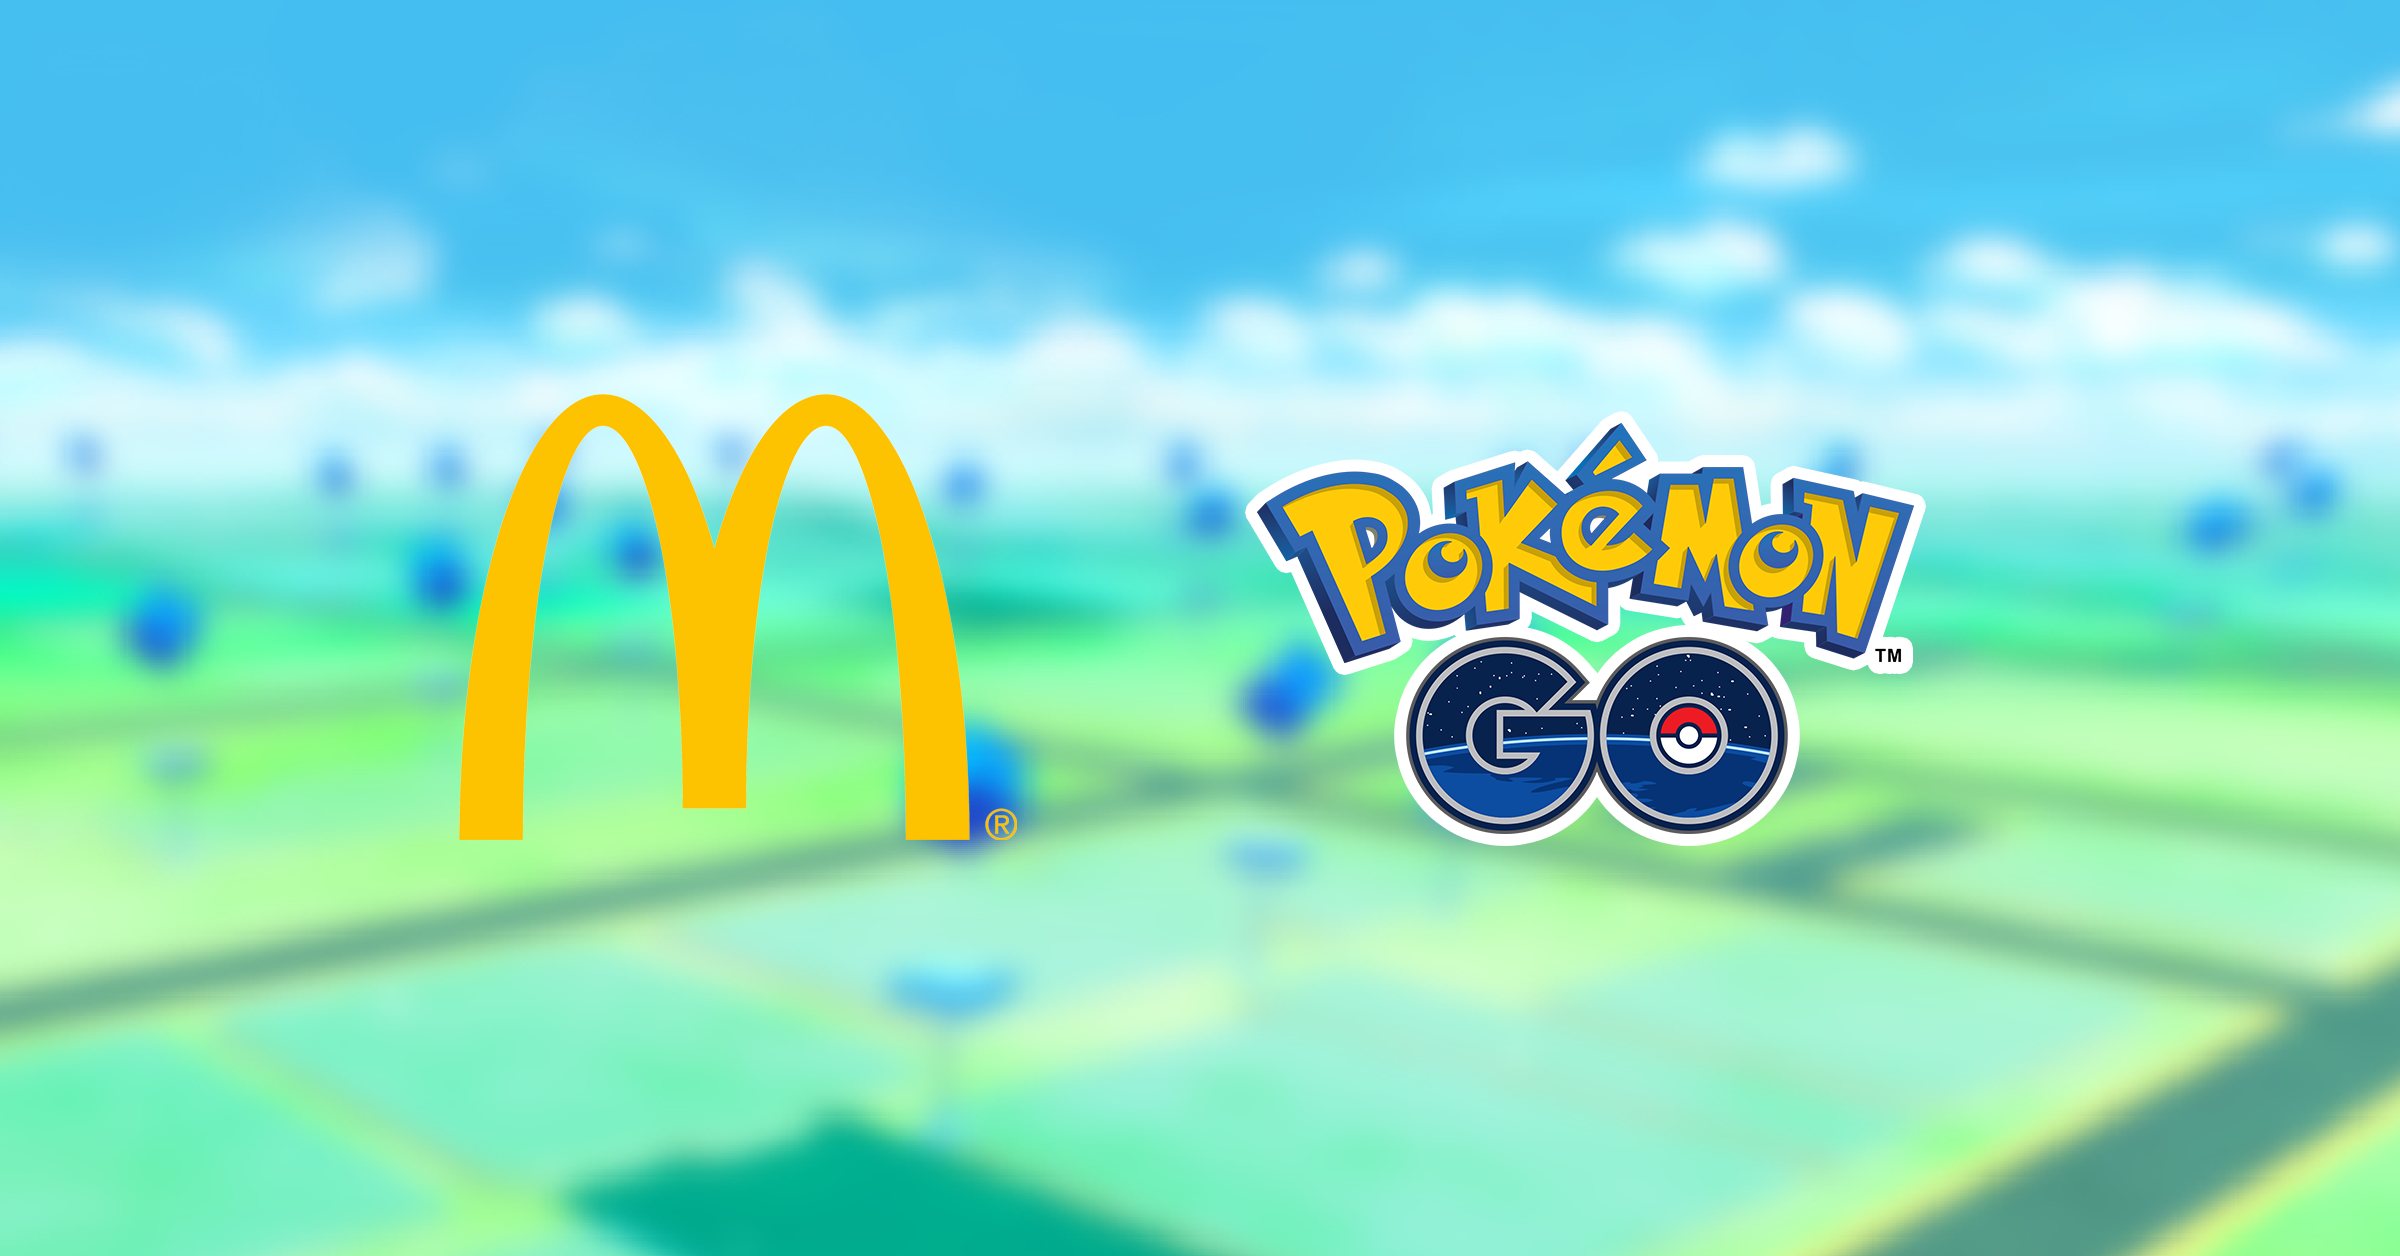 Pokémon Go promove eventos especiais em restaurantes McDonald’s